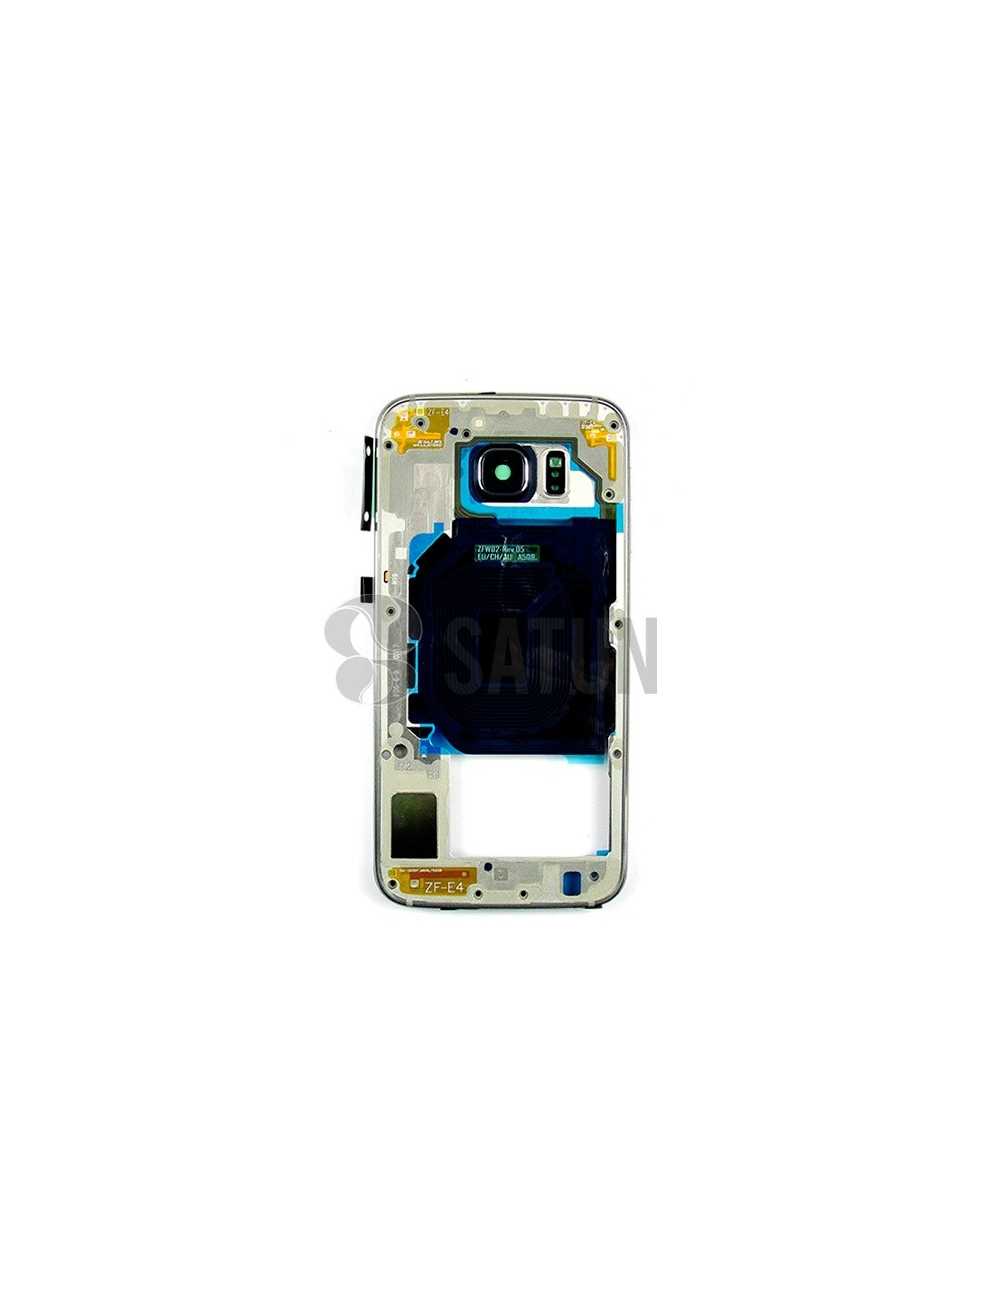 Carcasa intermedia Samsung Galaxy S6 negro (original con uso)